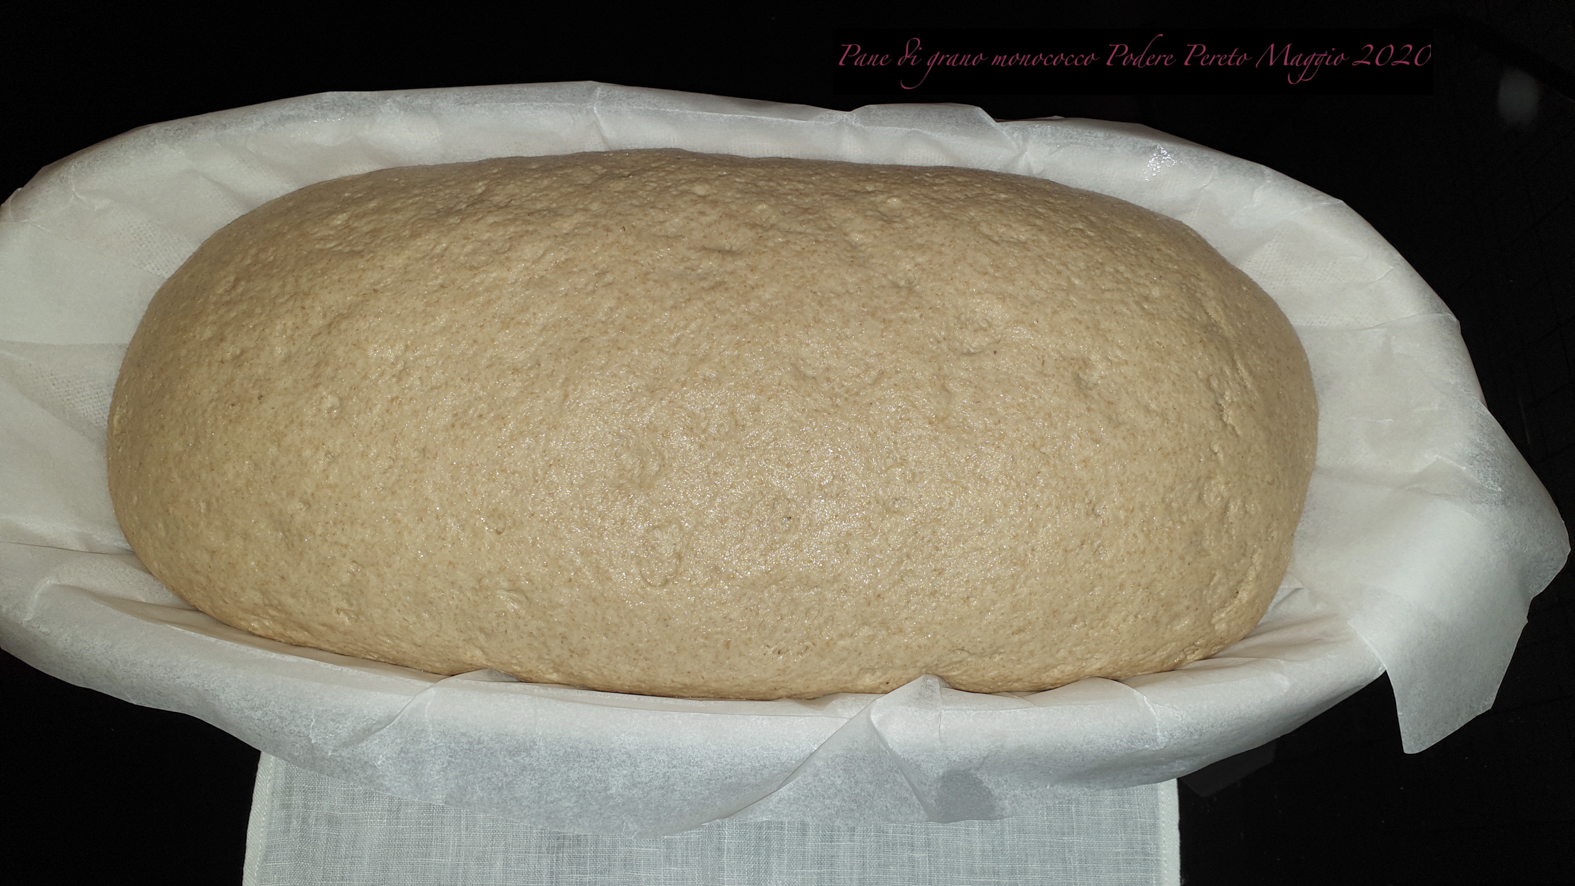 Pane di grano monococco (piccolo farro) 100%: Nuovo test con metodica  indiretta - Glutenlight